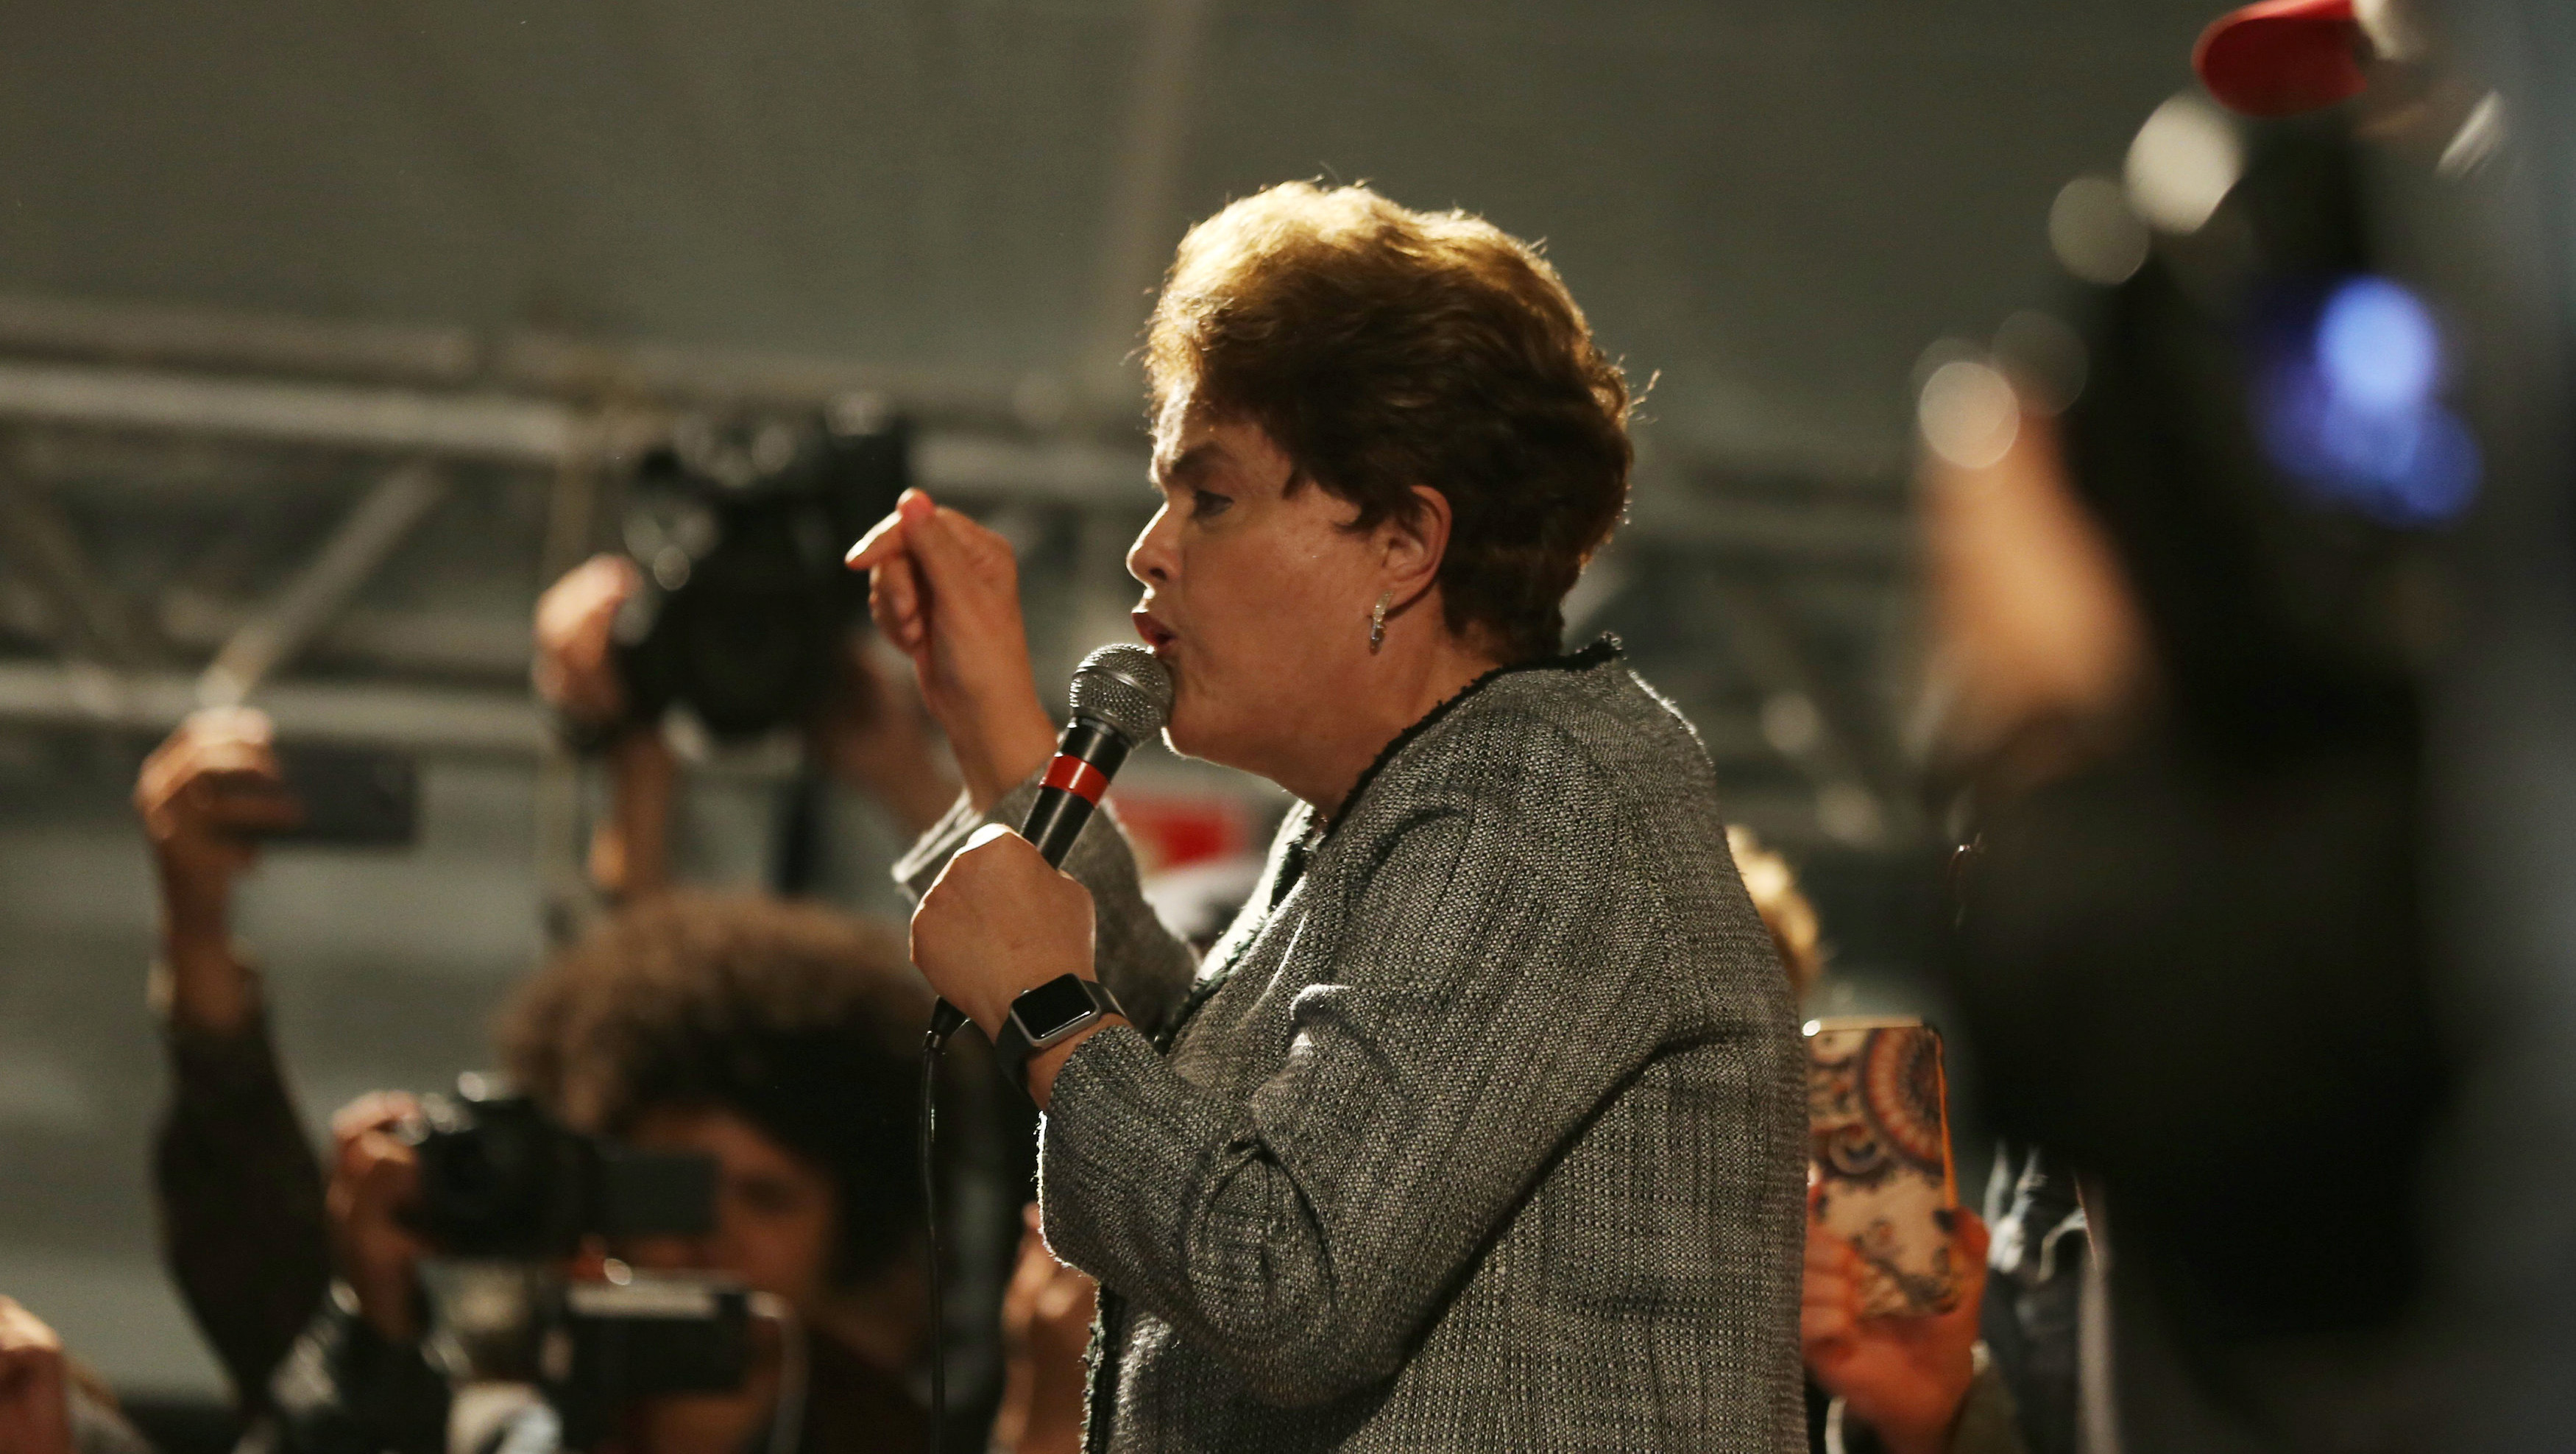 La presidenta electa de Brasil se muestra decidida a volver a Planalto.